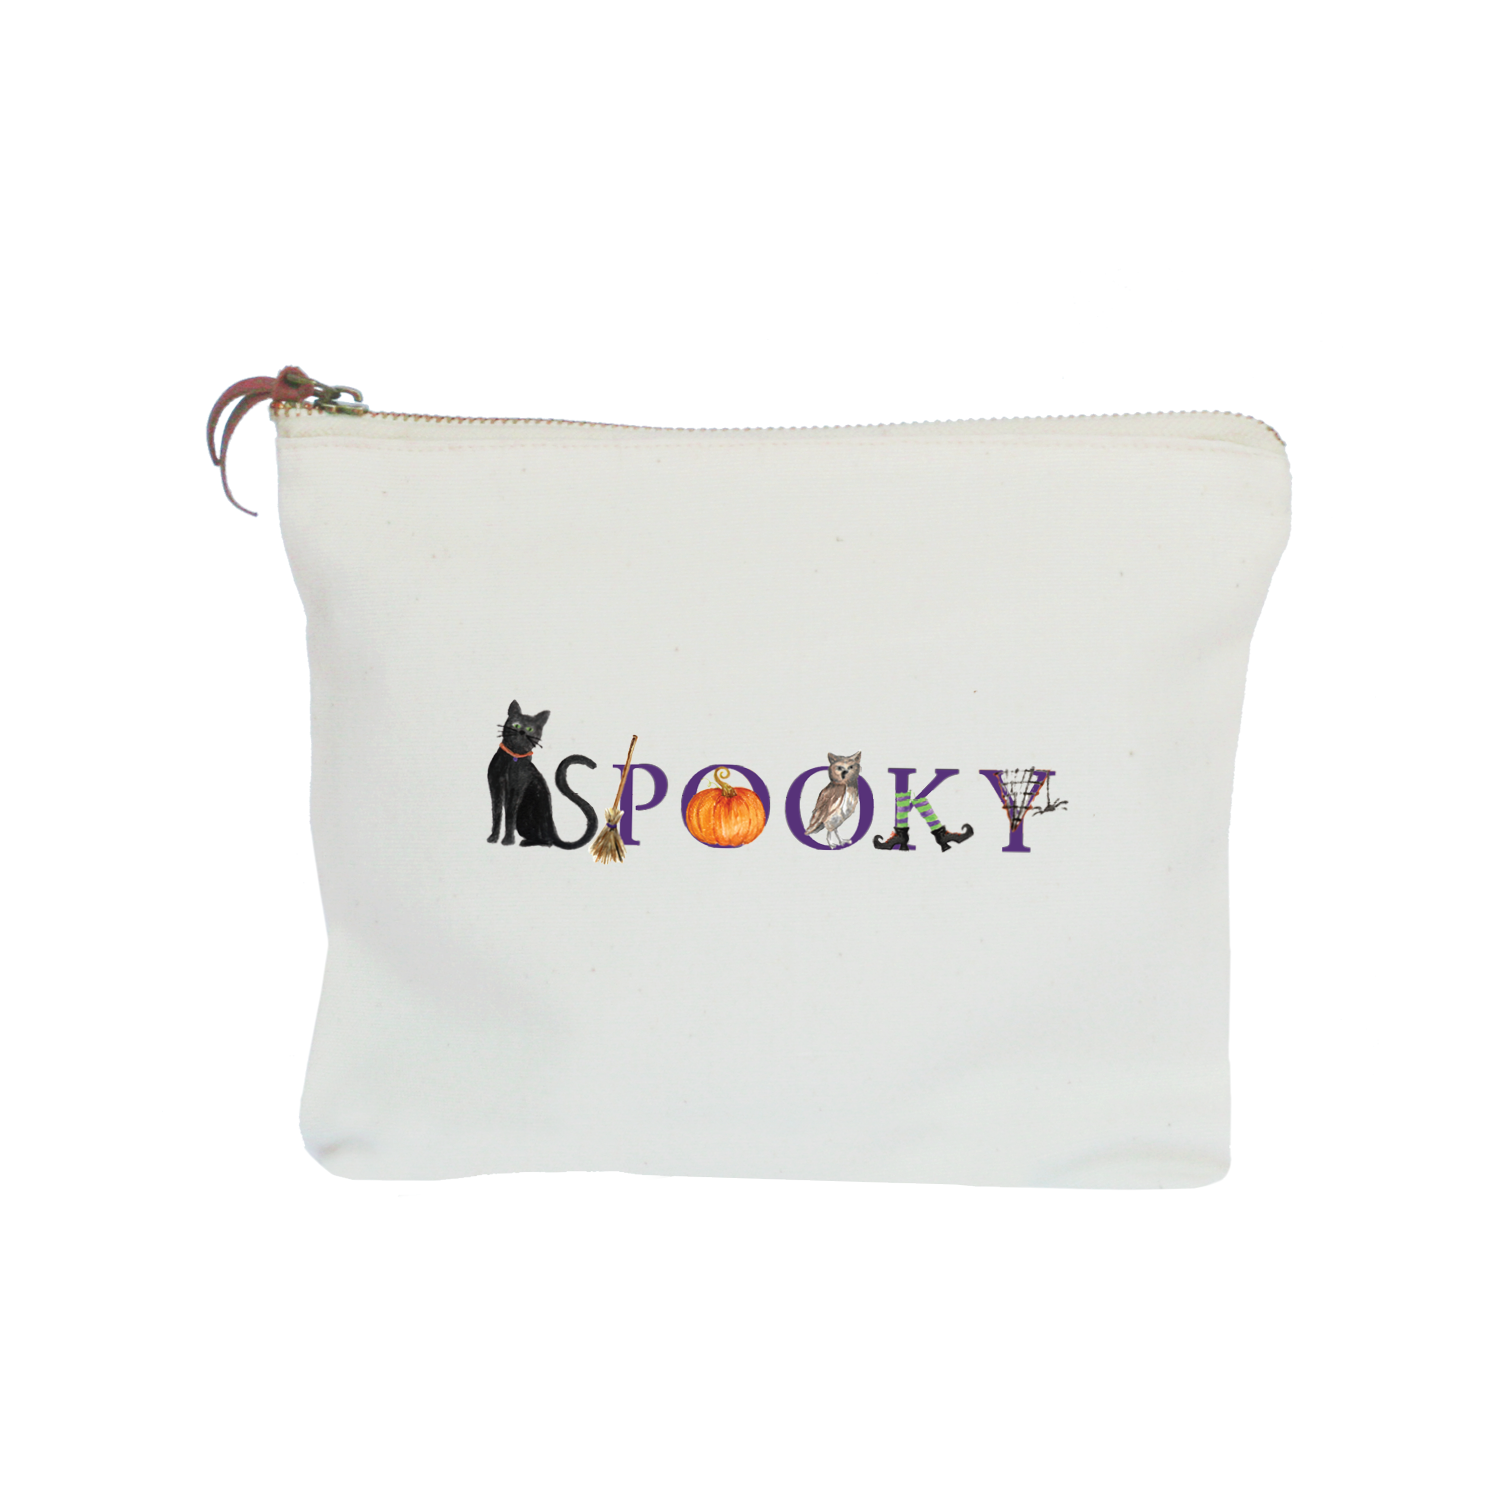 spooky zipper pouch